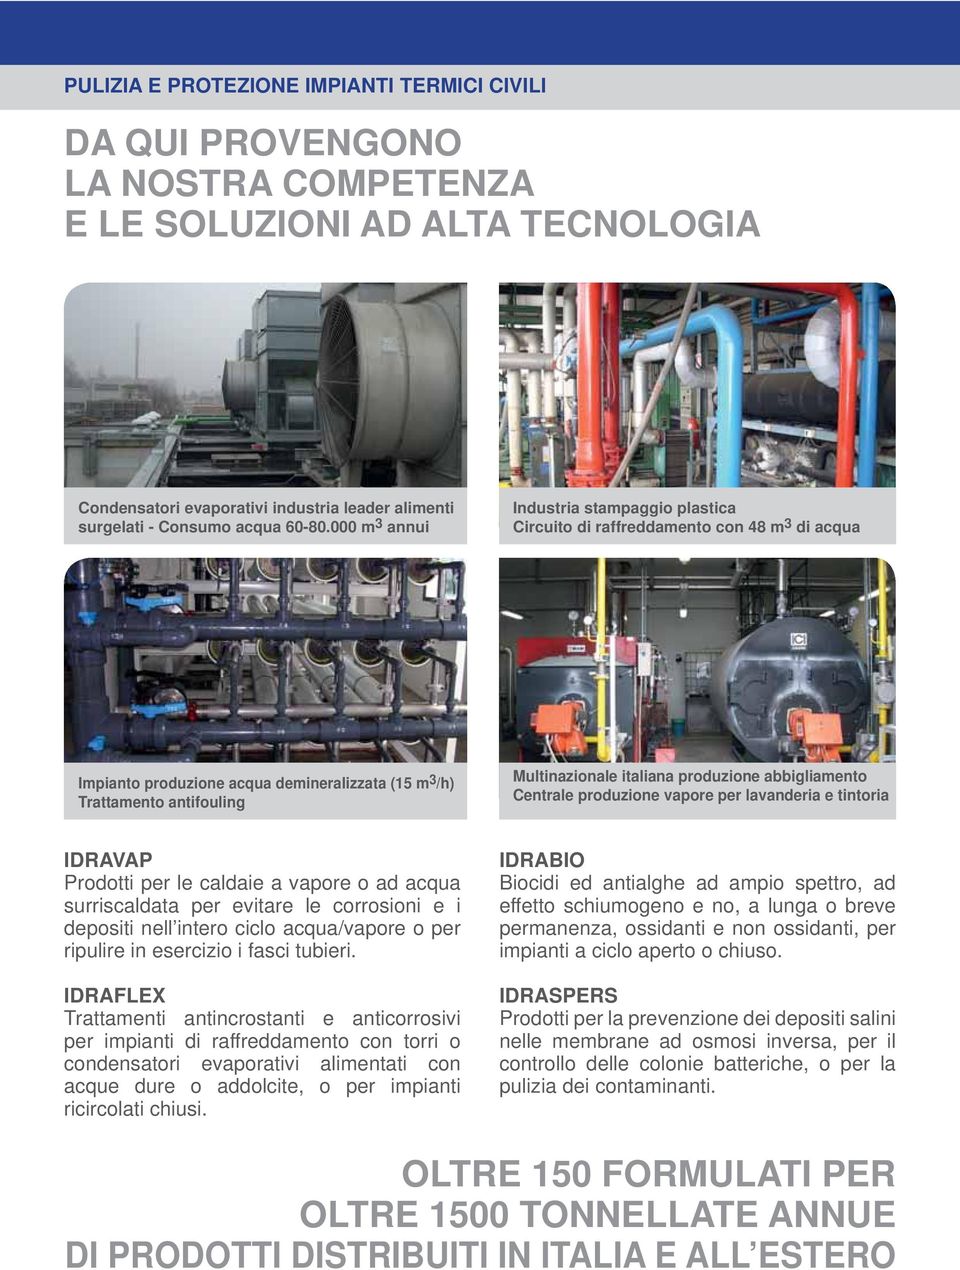 000 m 3 annui Industria stampaggio plastica Circuito di raffreddamento con 48 m 3 di acqua Impianto produzione acqua demineralizzata (15 m 3 /h) Trattamento antifouling Multinazionale italiana